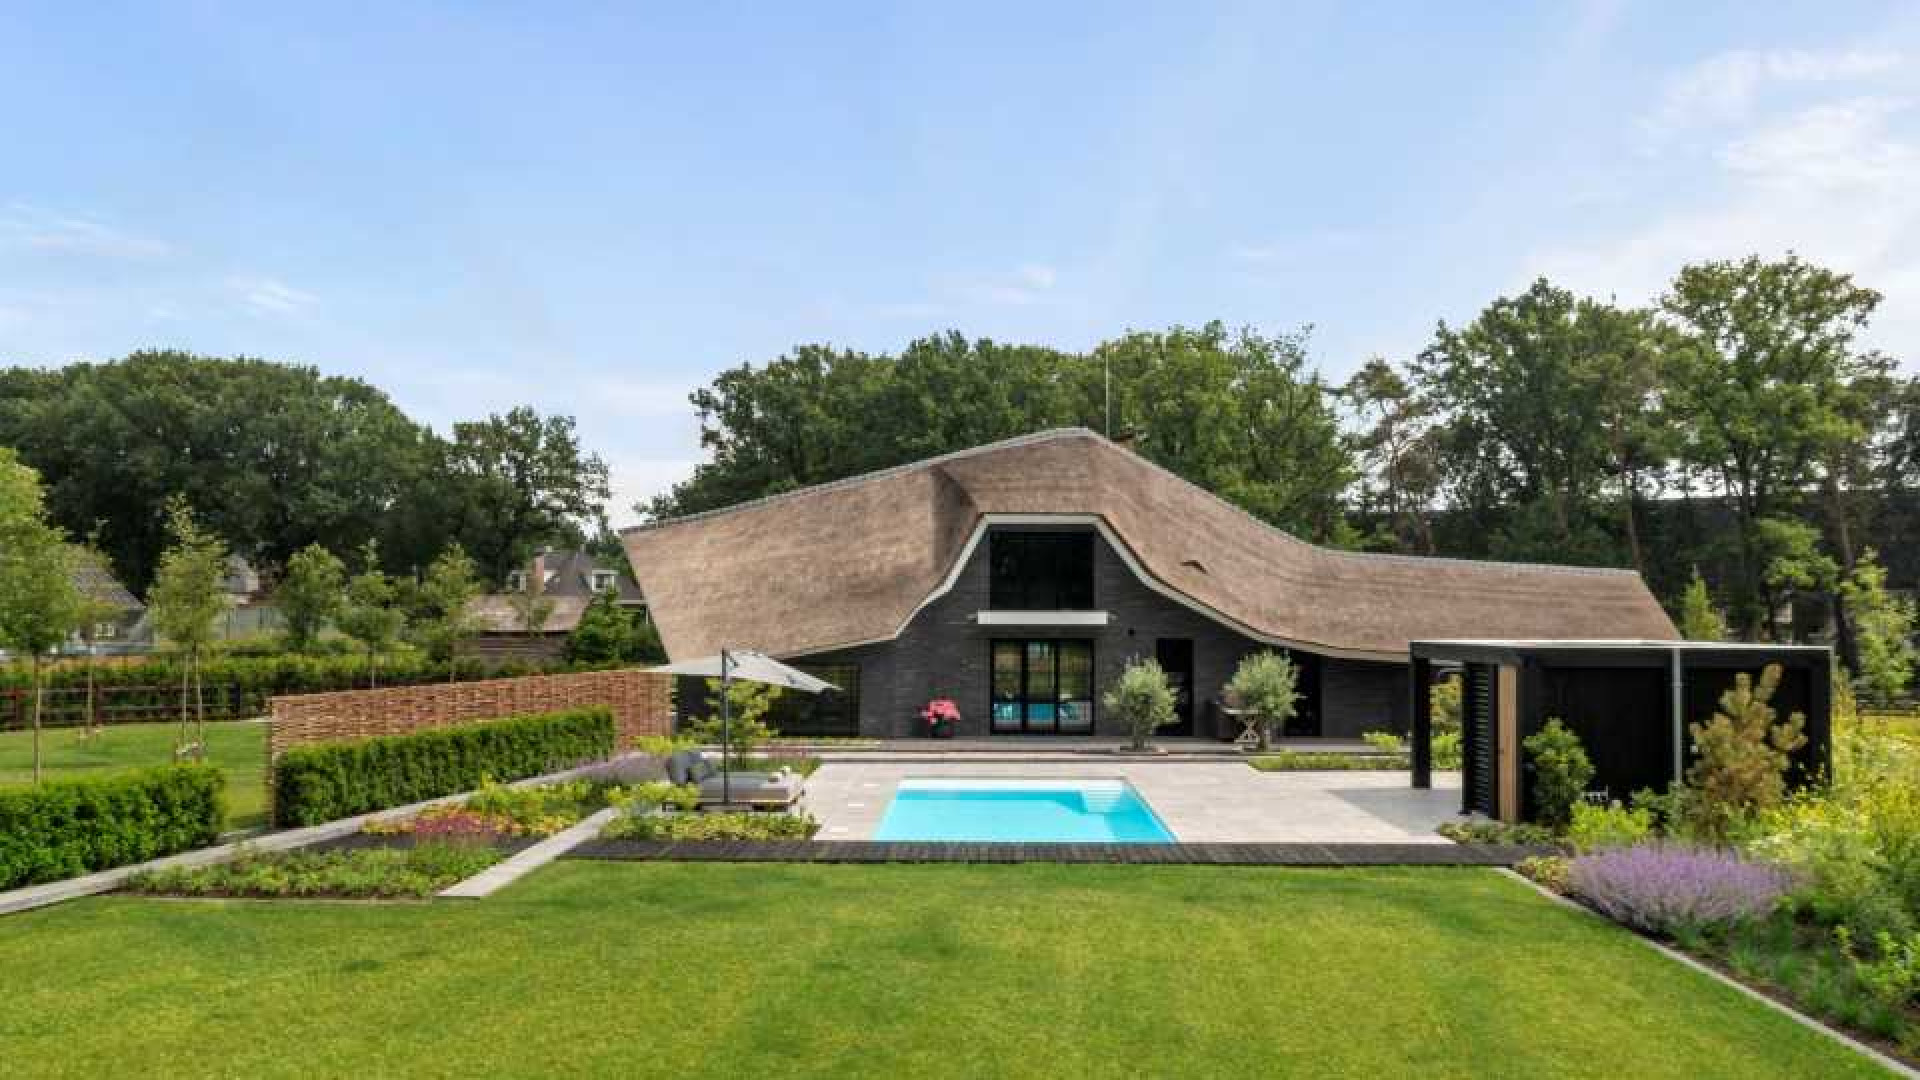 DJ Nicky Romero koopt deze miljoenenvilla met zwembad en inpandige lift. Zie foto's plus video.